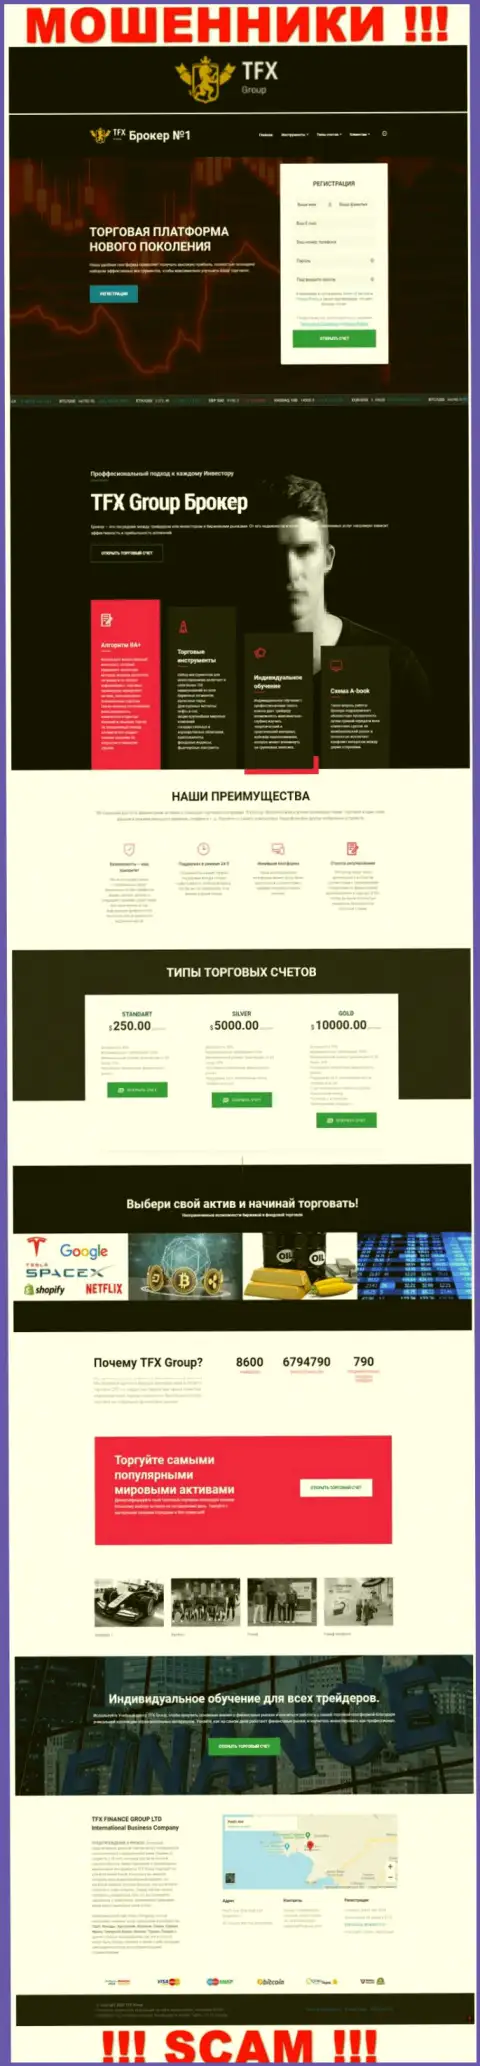 ОСТОРОЖНЕЕ ! Официальный сайт TFX Group настоящая замануха для потенциальных клиентов